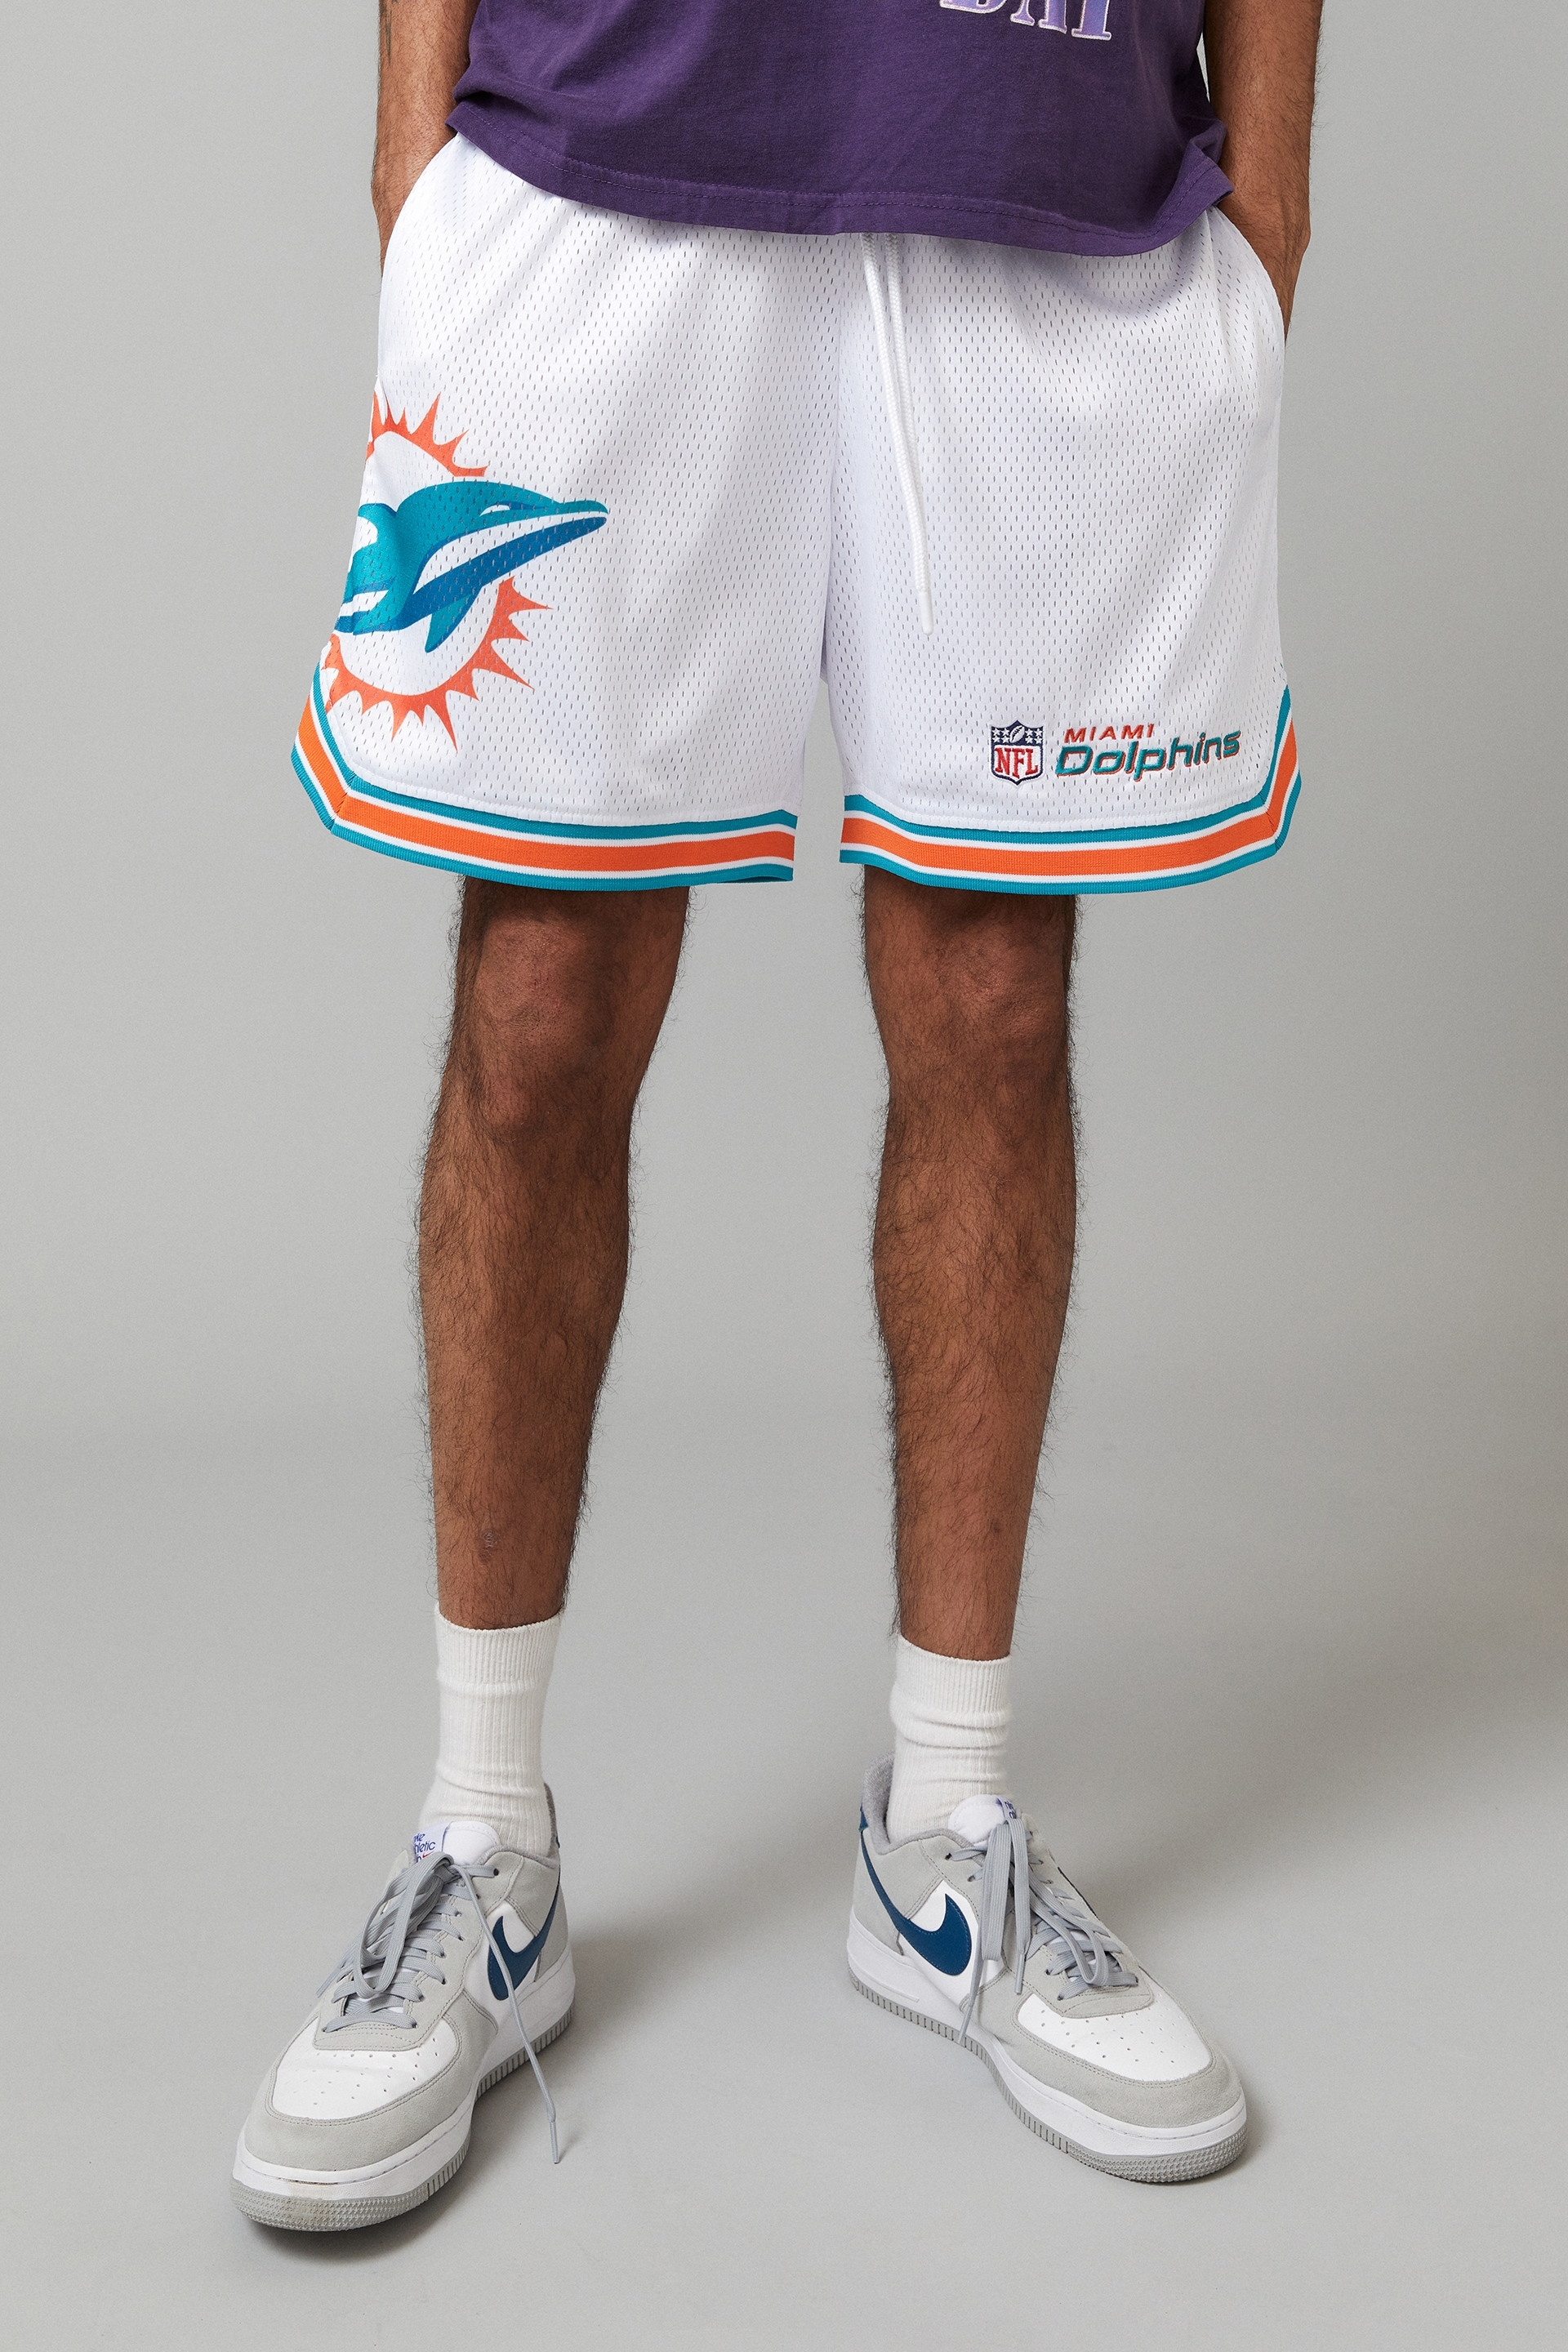 Factorie - Nfl Basketball Short - Lcn nfl miami dolphins/white